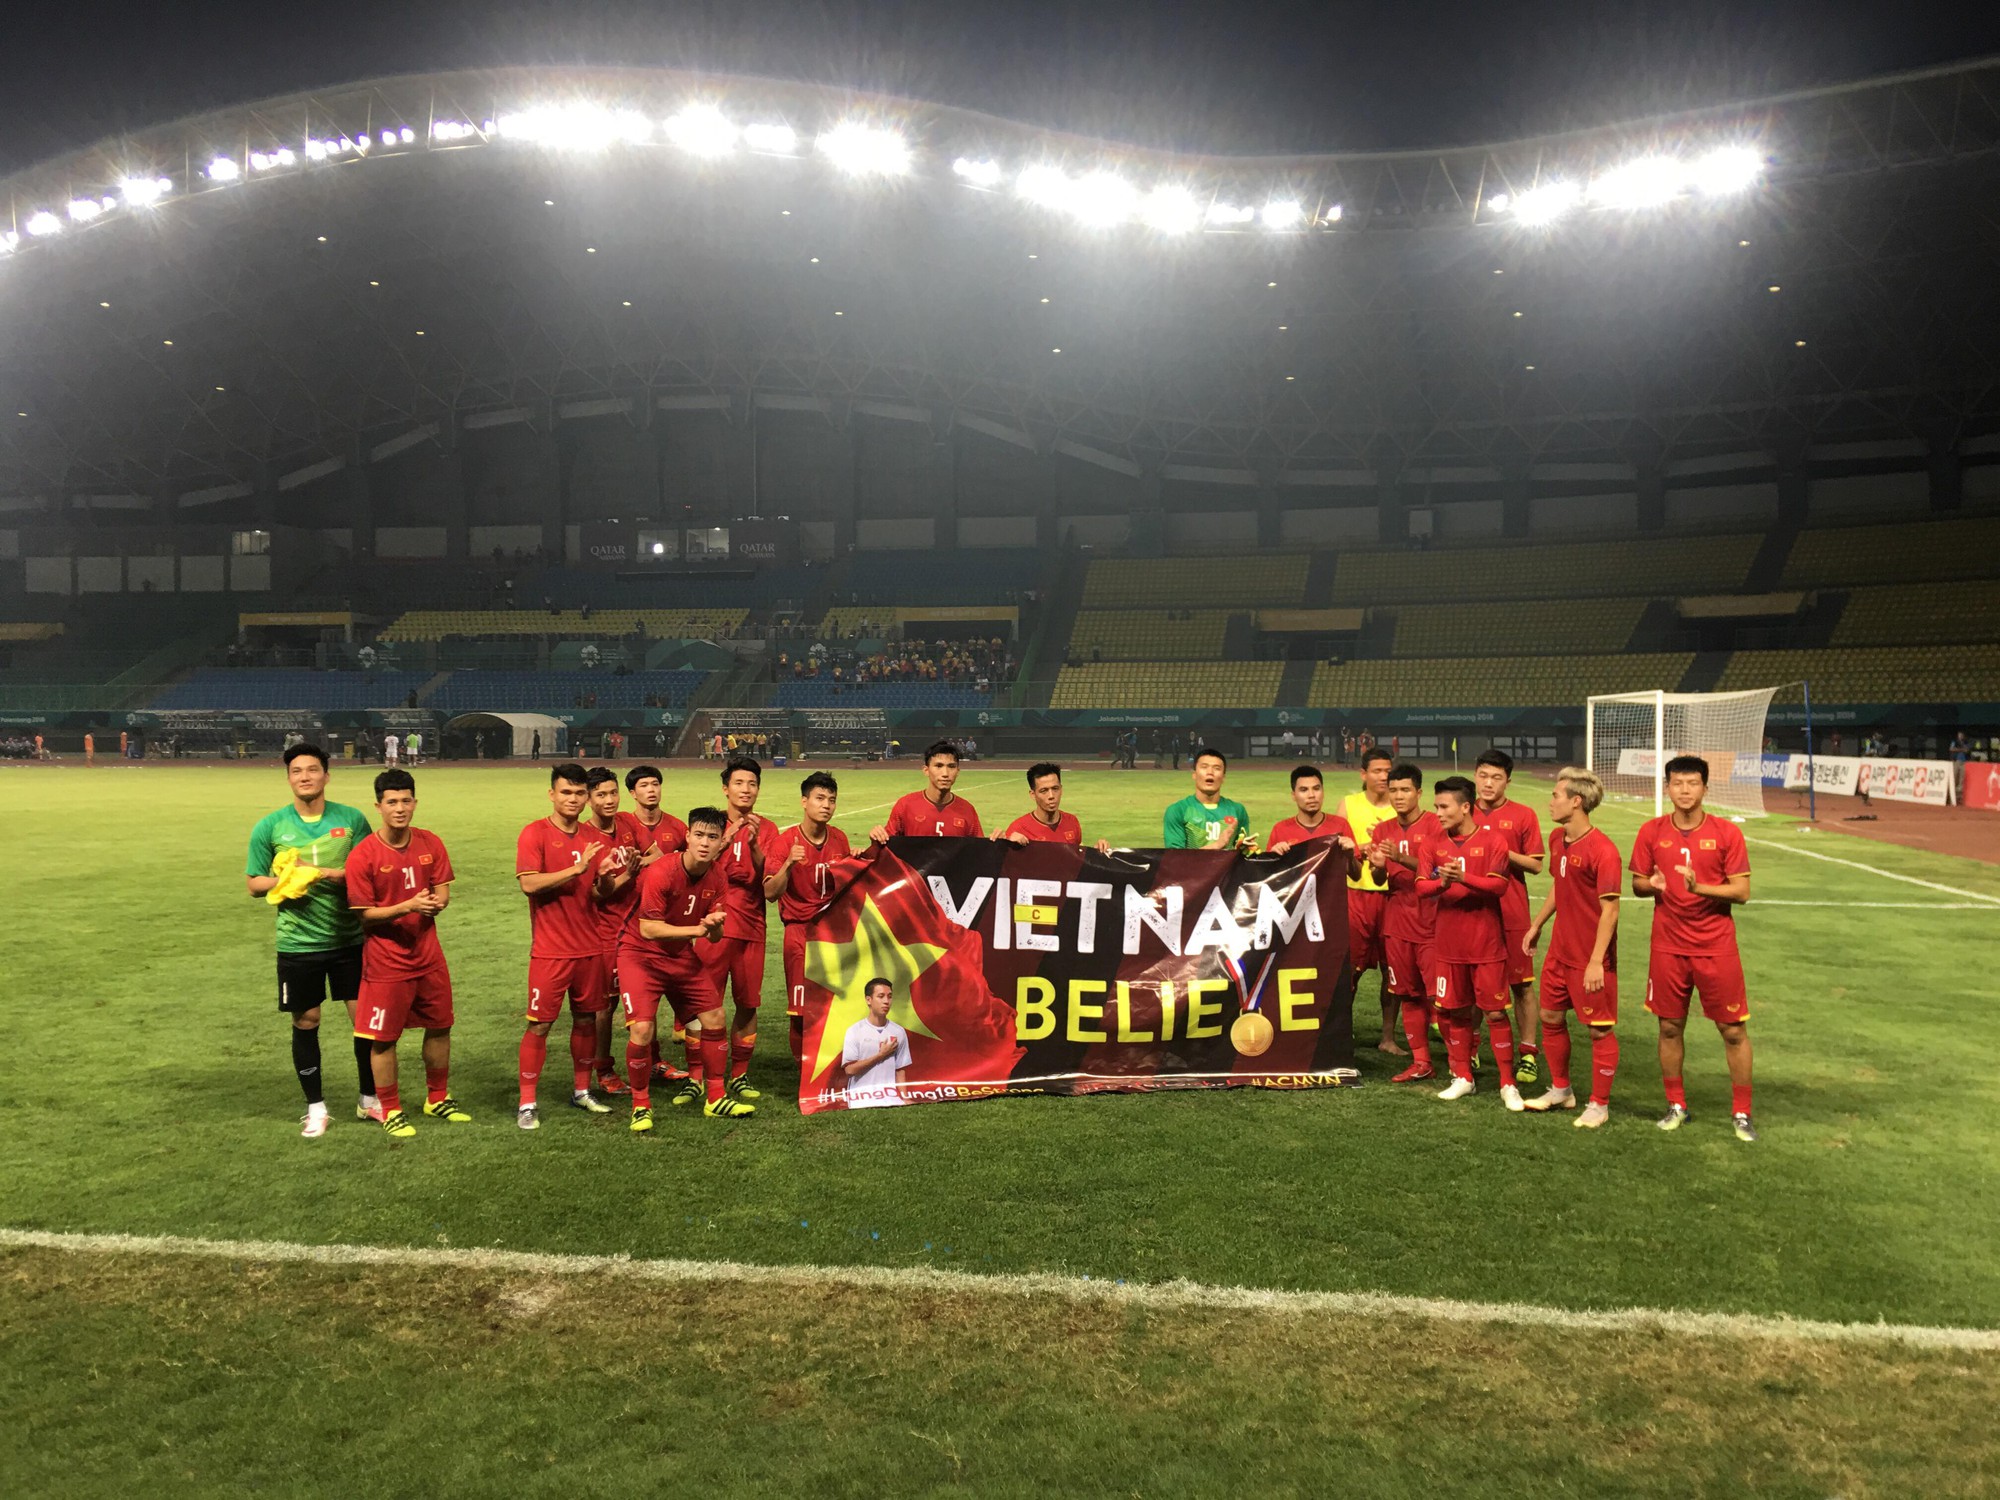 Đánh bại Olympic Bahrain, Olympic Việt Nam gửi lời cảm ơn Đỗ Hùng Dũng và người hâm mộ - Ảnh 1.